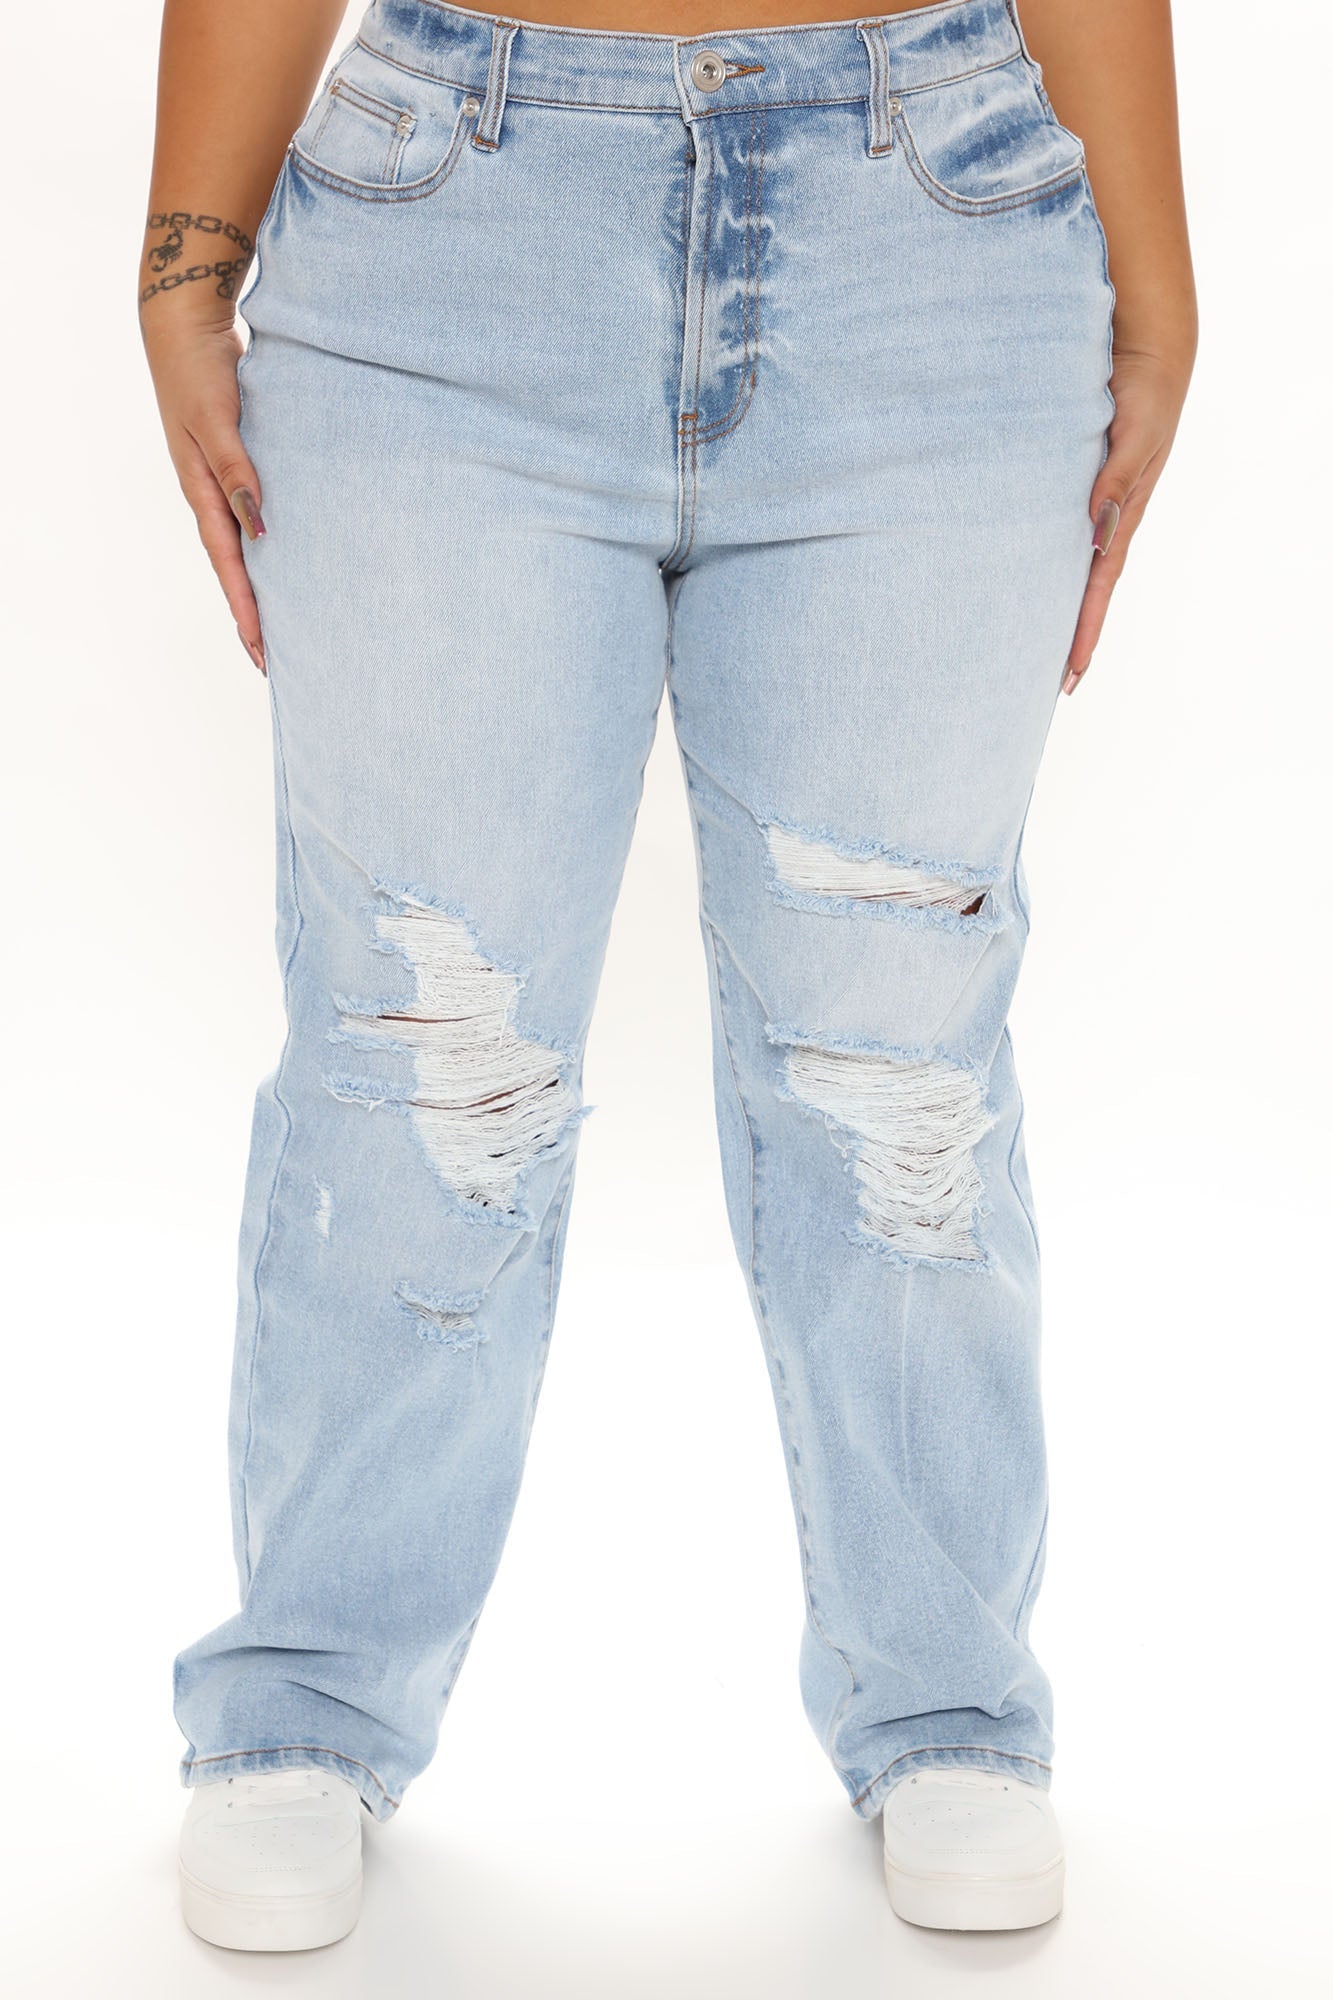 Vibin Vintage 90's Slacker Straight Leg Jeans - Light Blue Wash – InsStreet